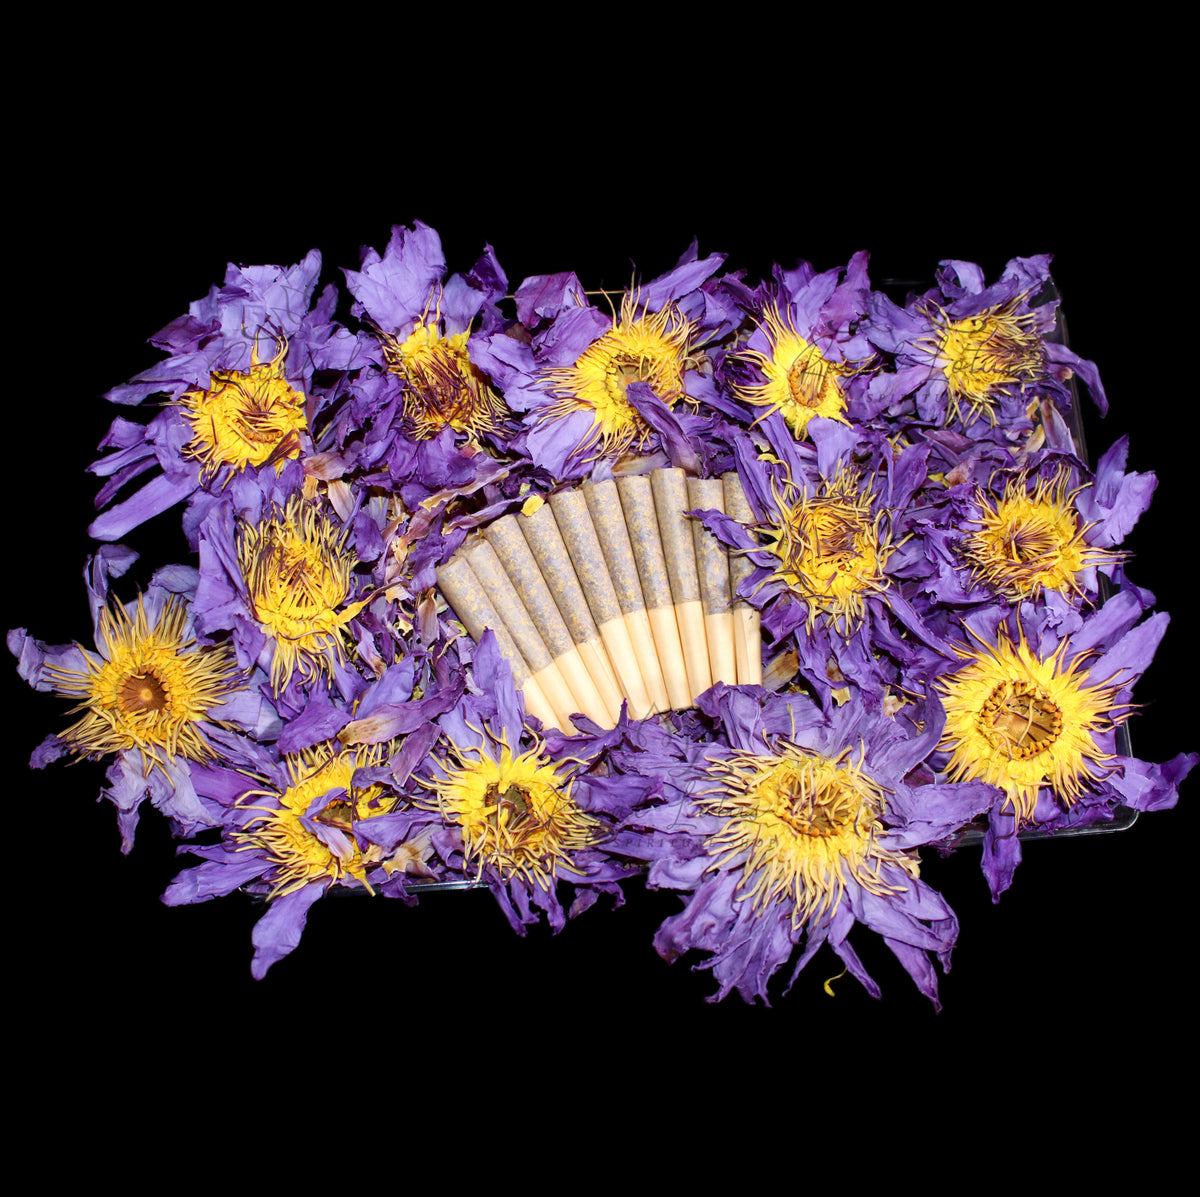 Lotus Floral in Purple by New Vintage Handbags